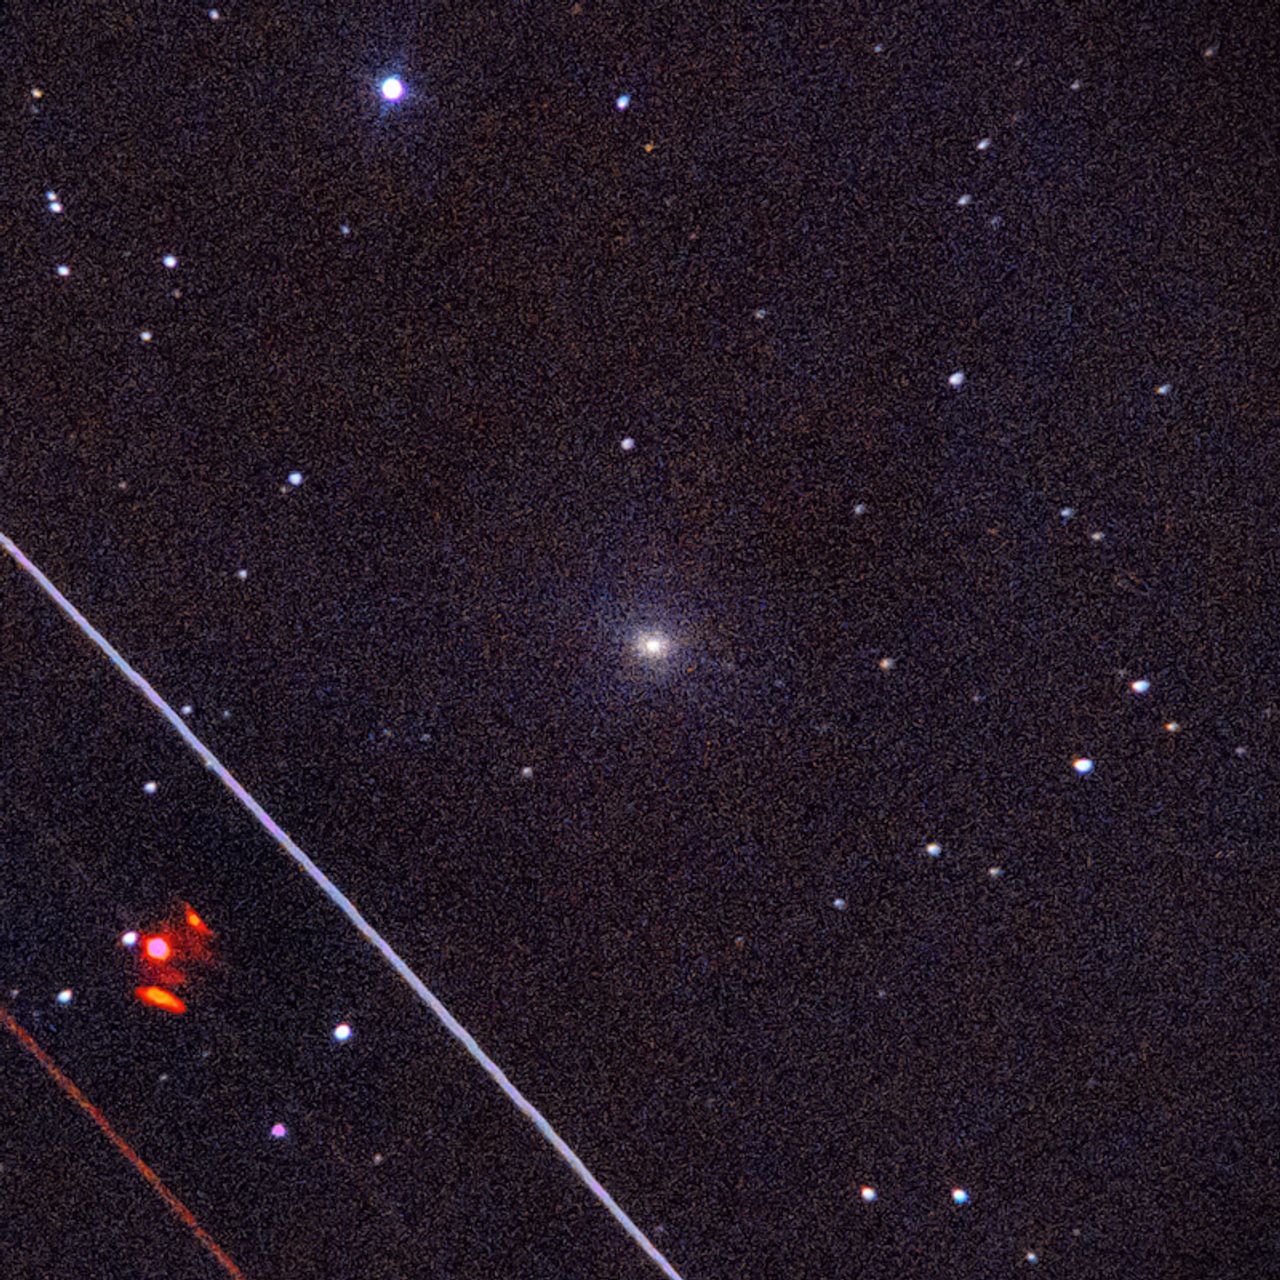 NGC3486